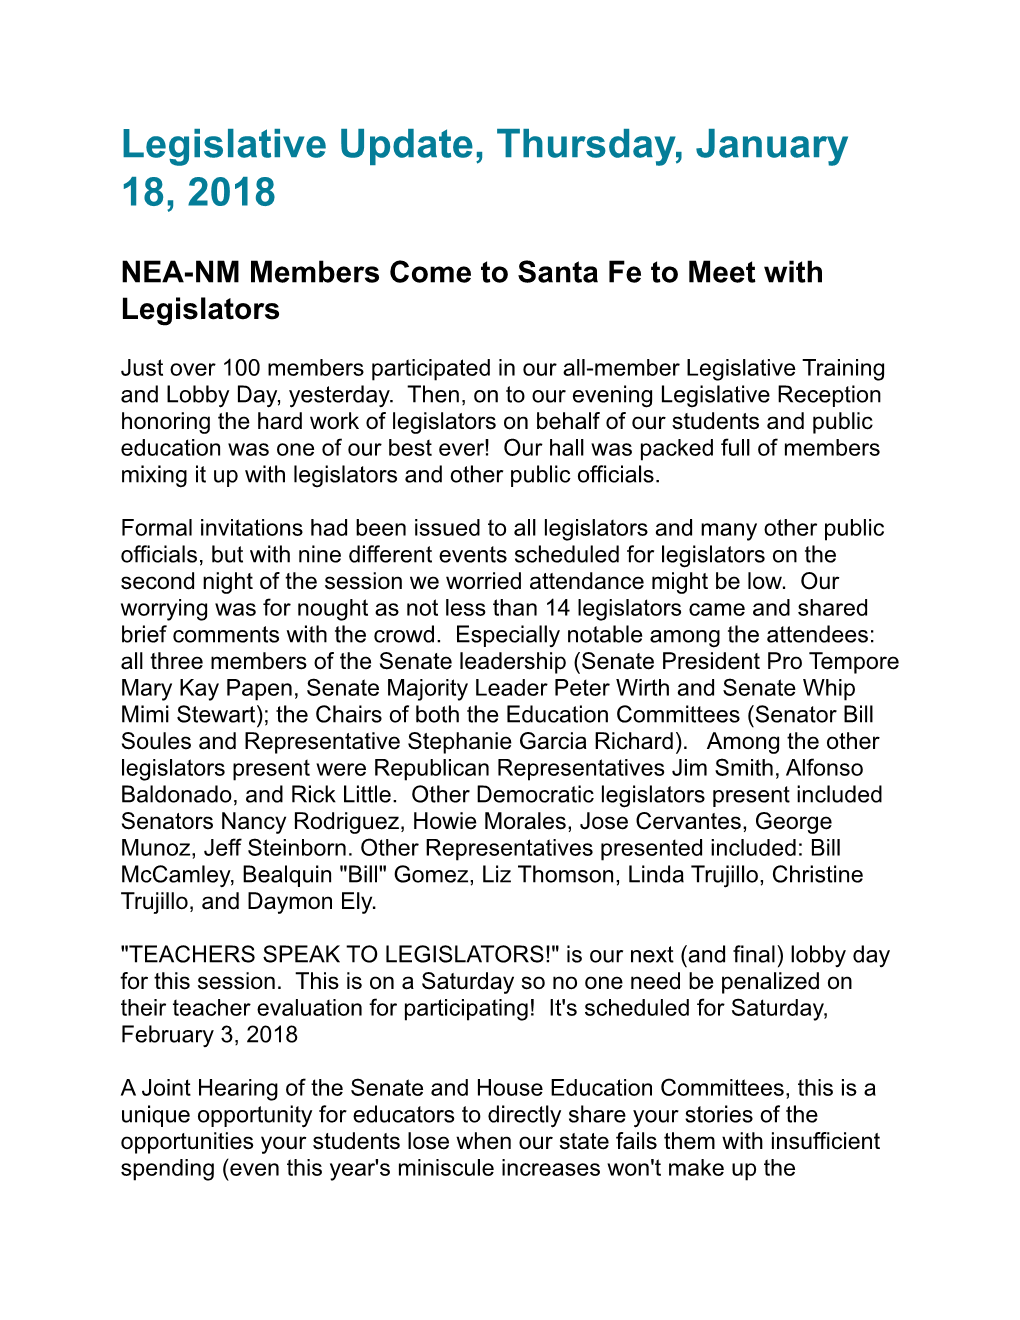 Legislative Update, Thursday, January 18, 2018